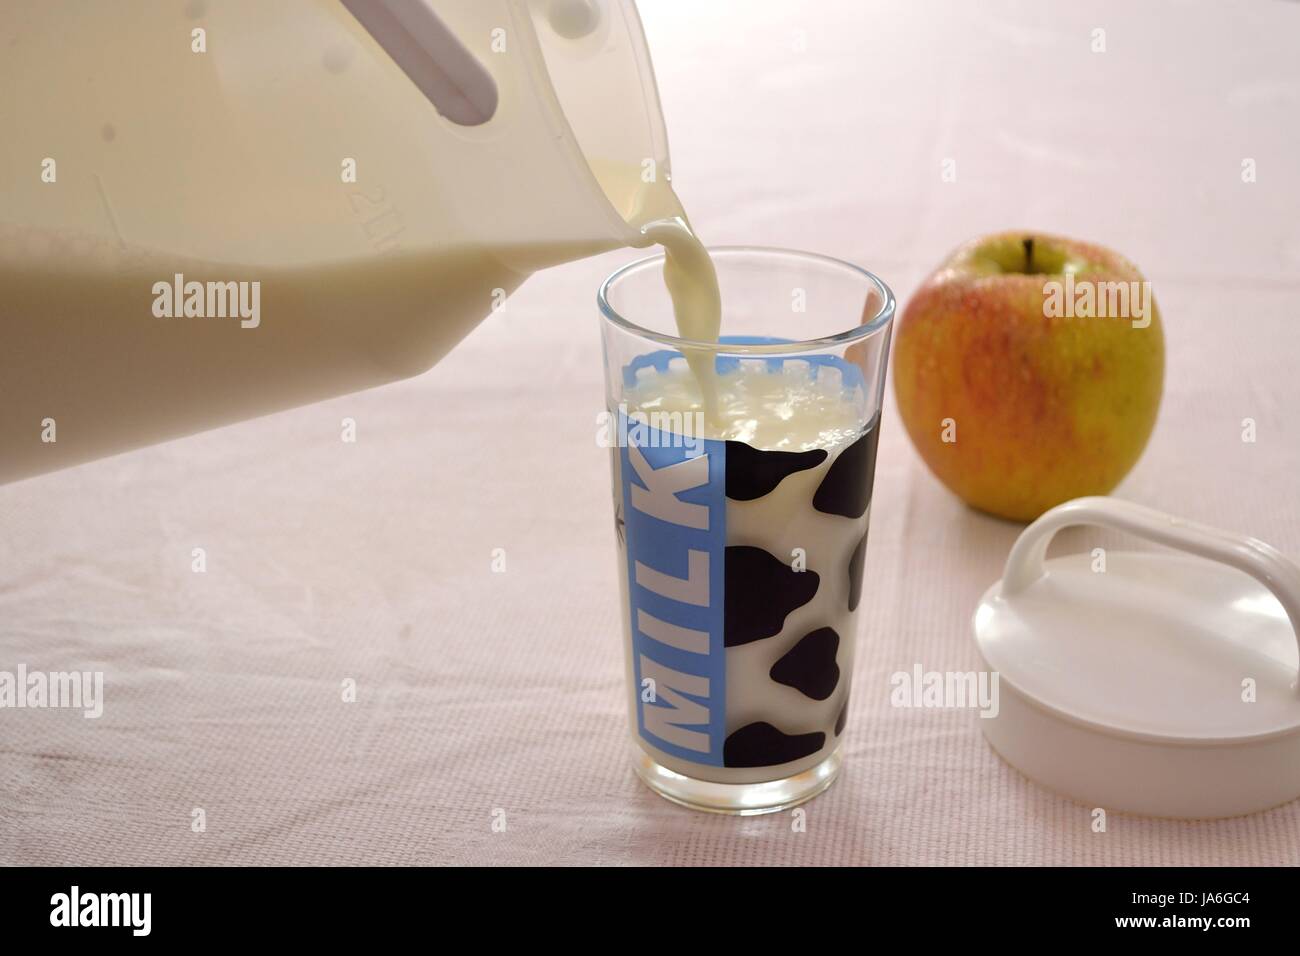 Jemand leert Milch in Glas, frischer Apfel liegt am Tisch Stock Photo